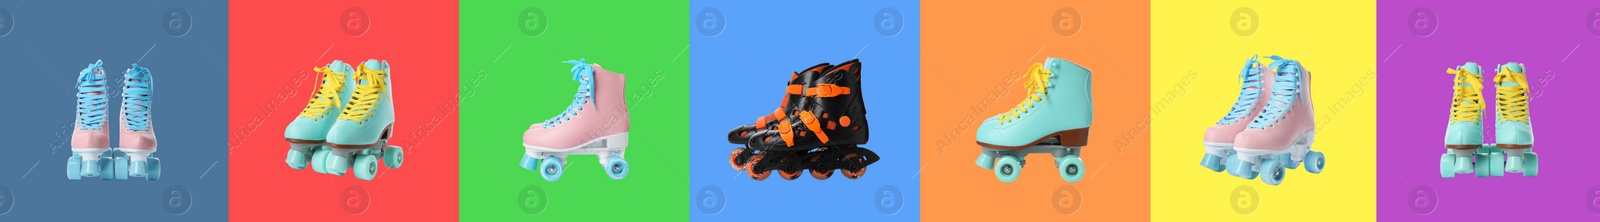 Image of Many roller skates on different color backgrounds. Banner design